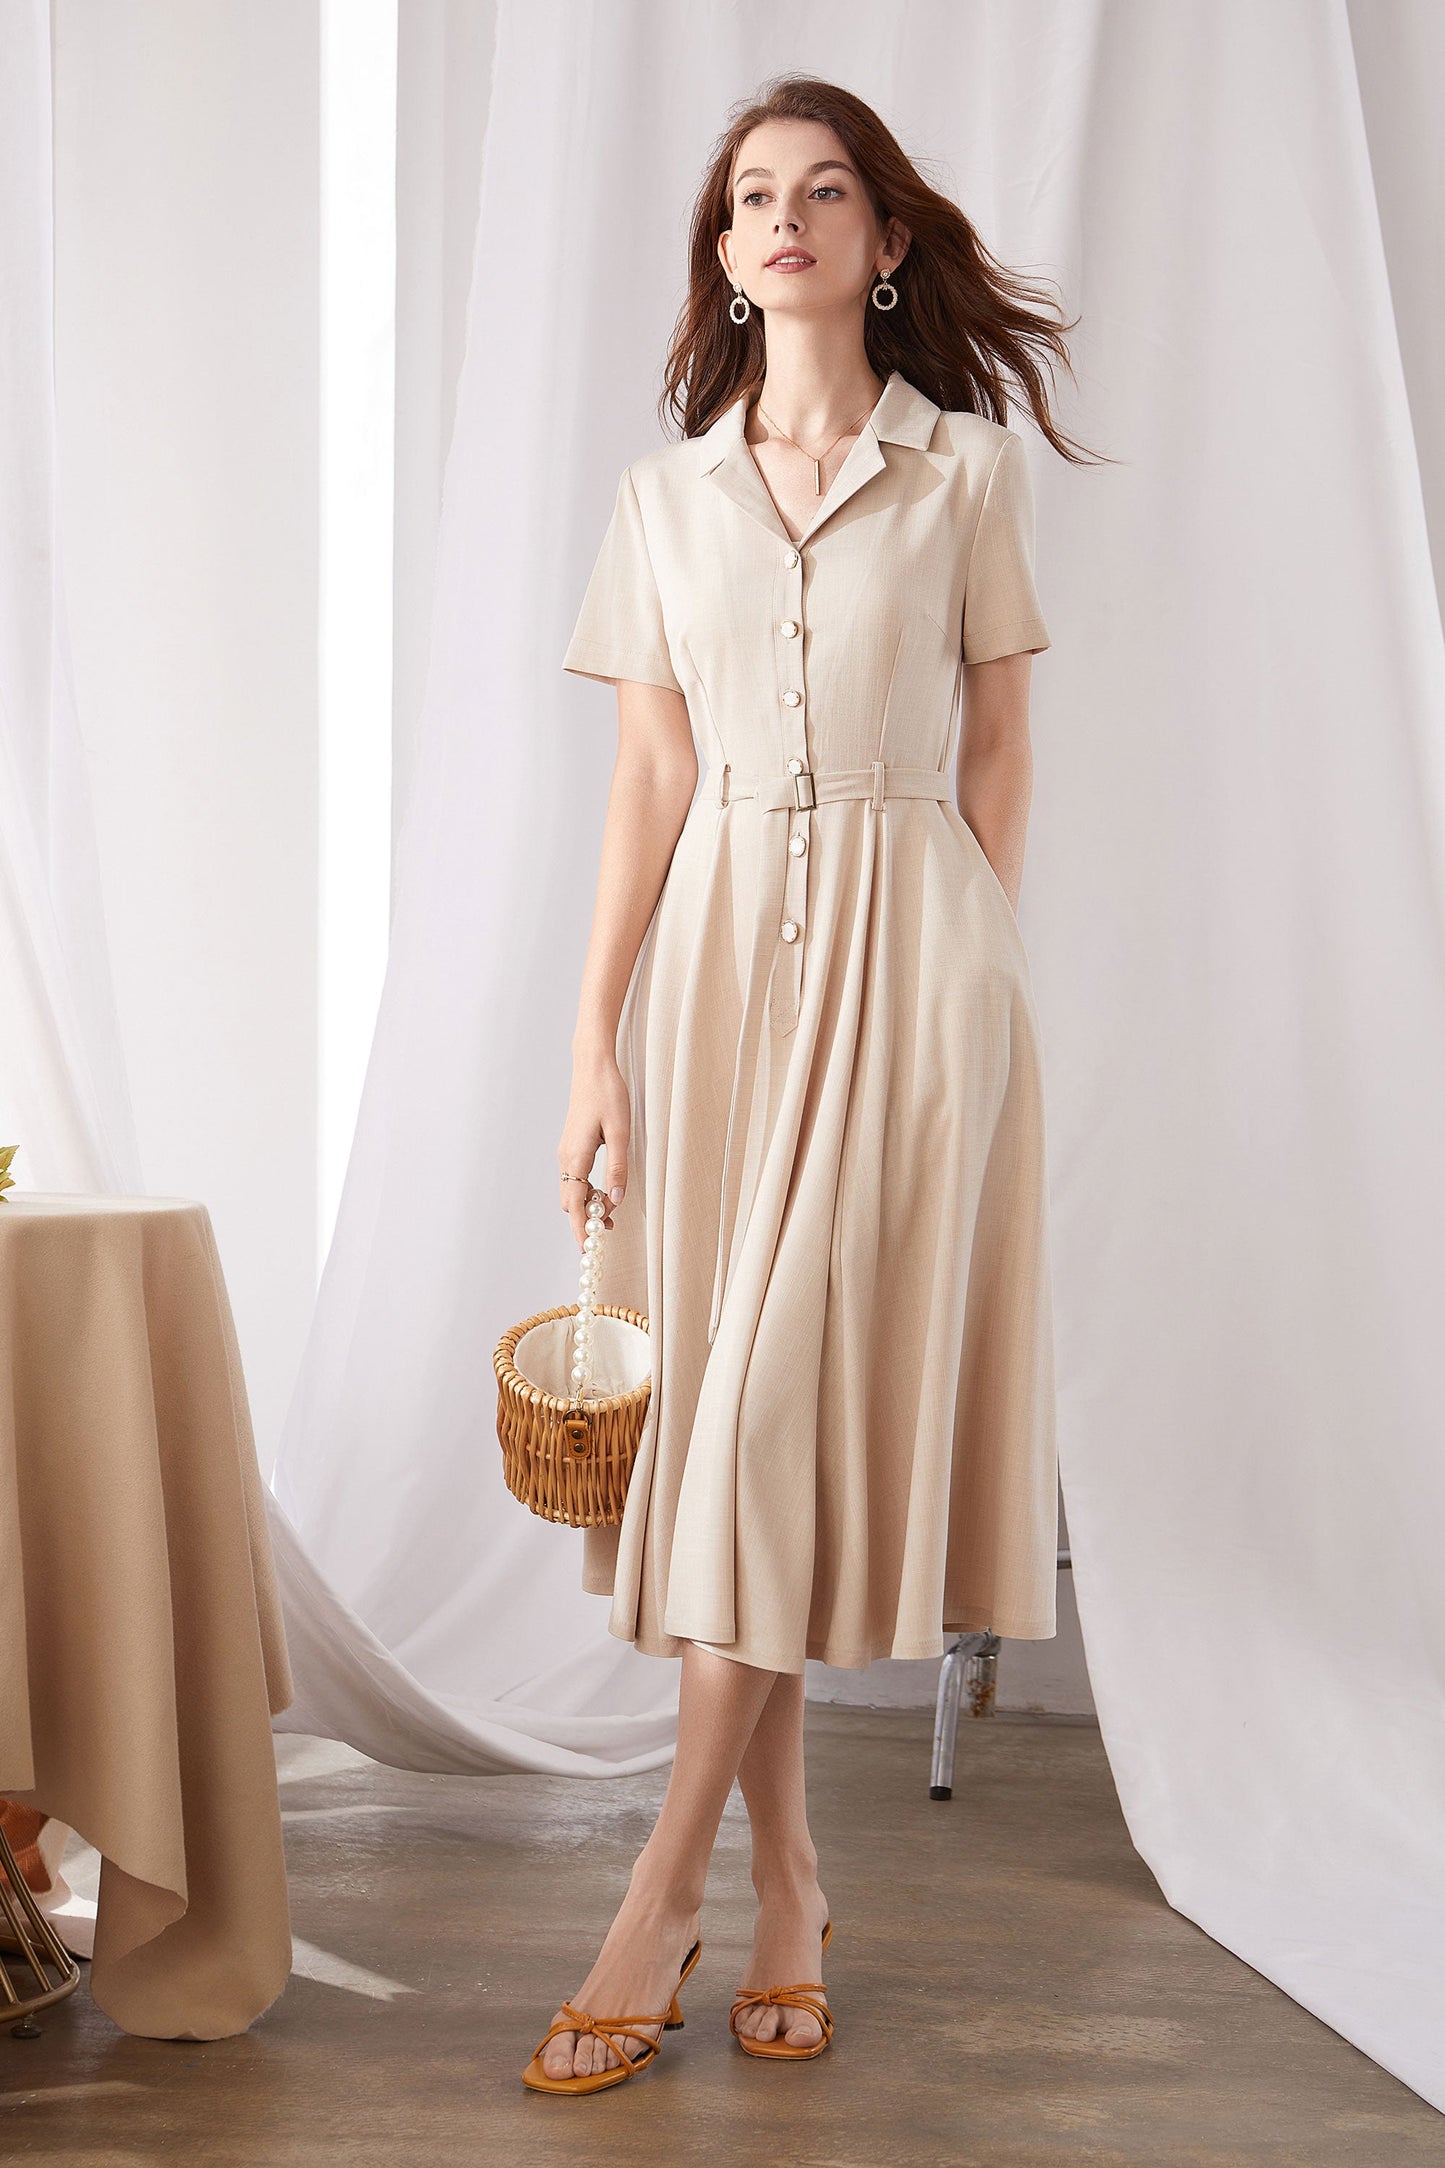 Summer Short Sleeve Waist Dress In Beige  3375,Size XL #CK2200752